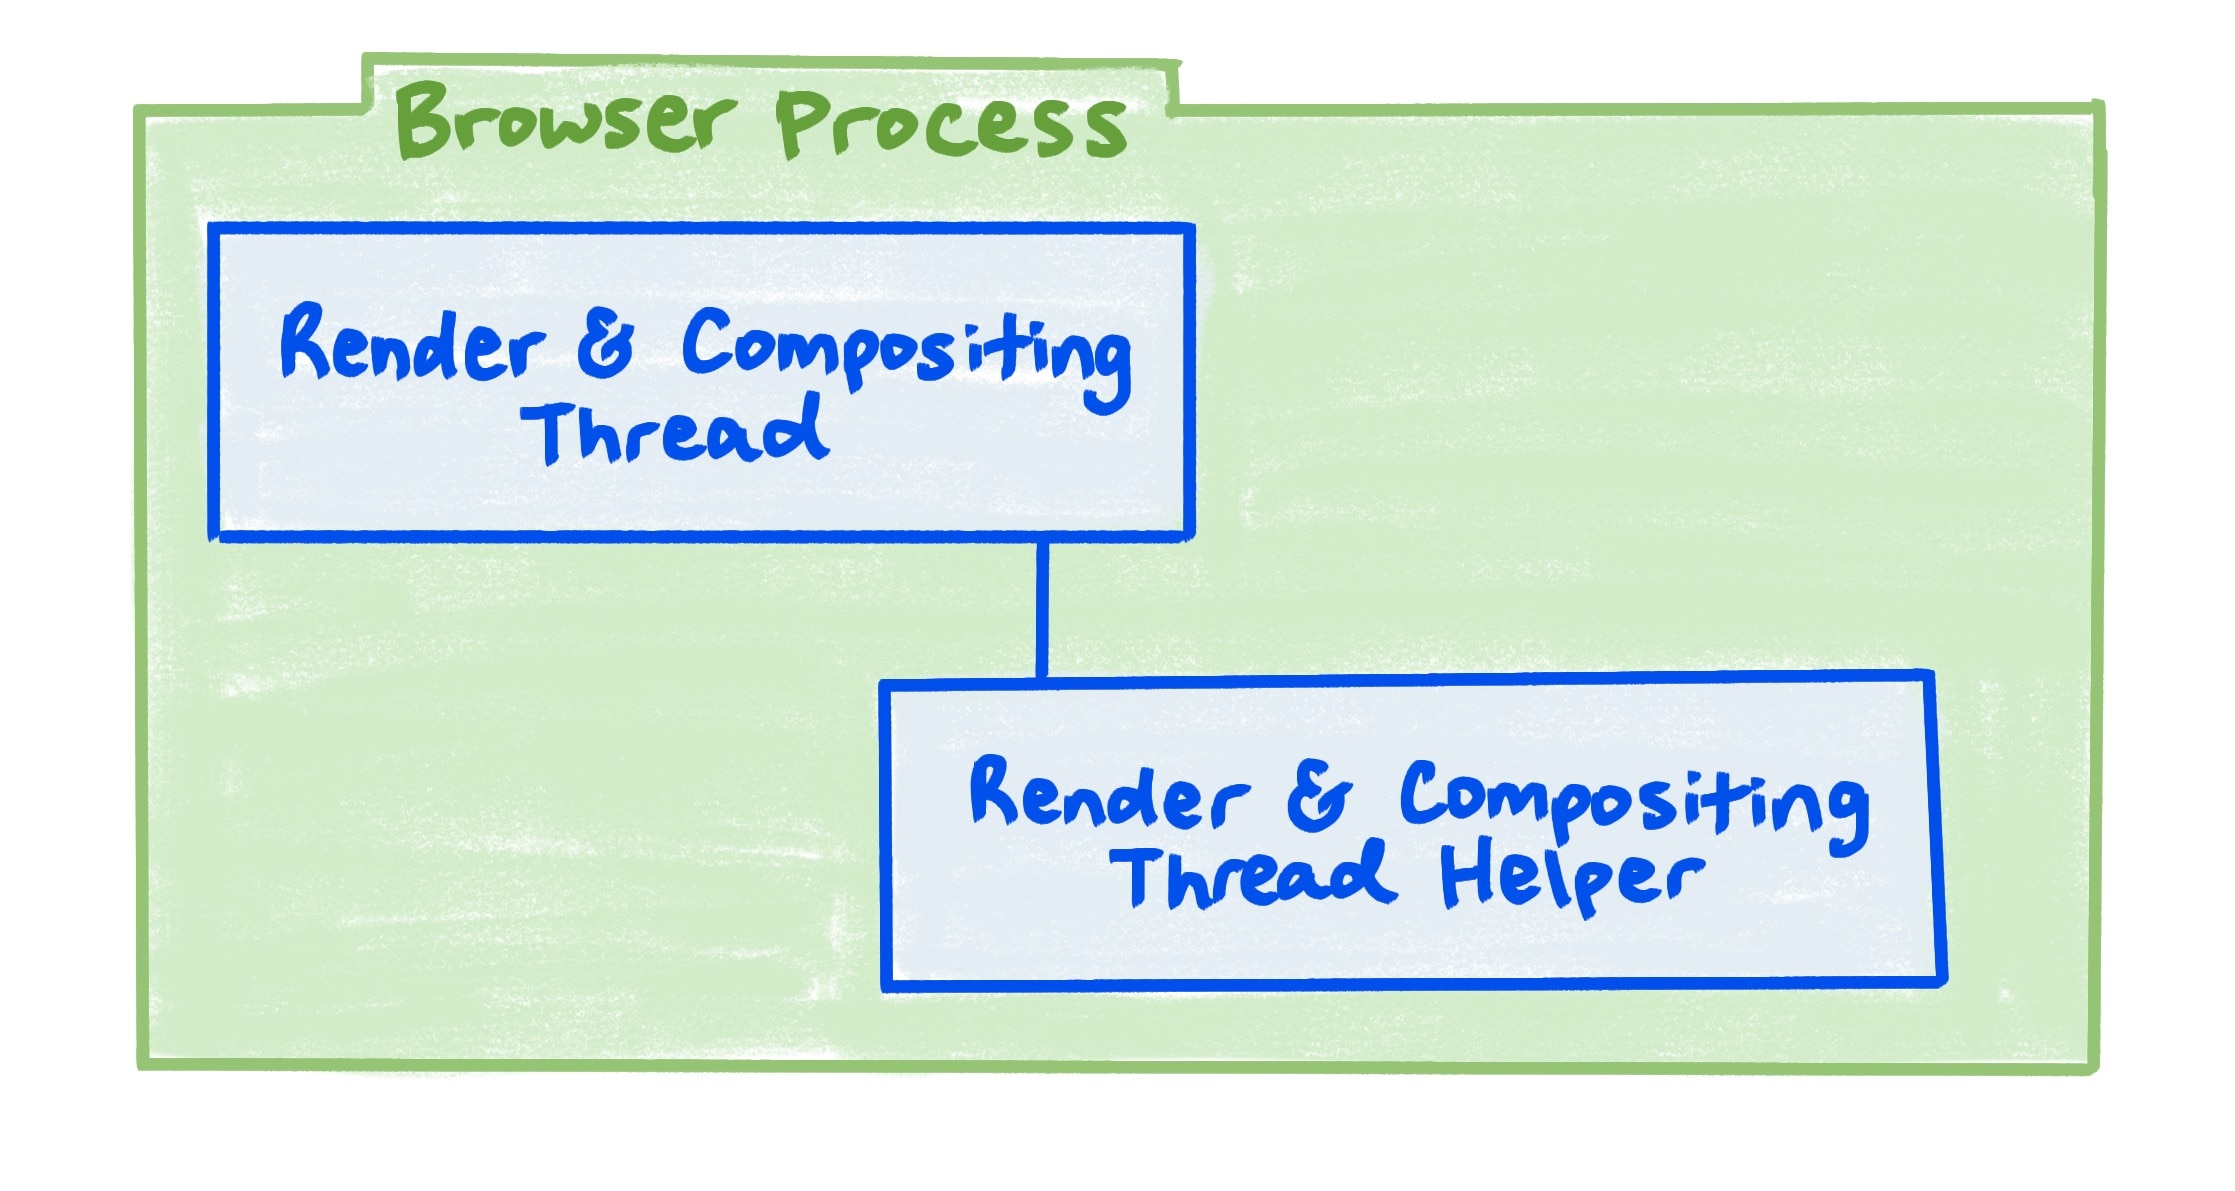 Een browserprocesdiagram dat de relatie toont tussen de Render- en compositing-thread, en de render- en compositing-thread-helper.